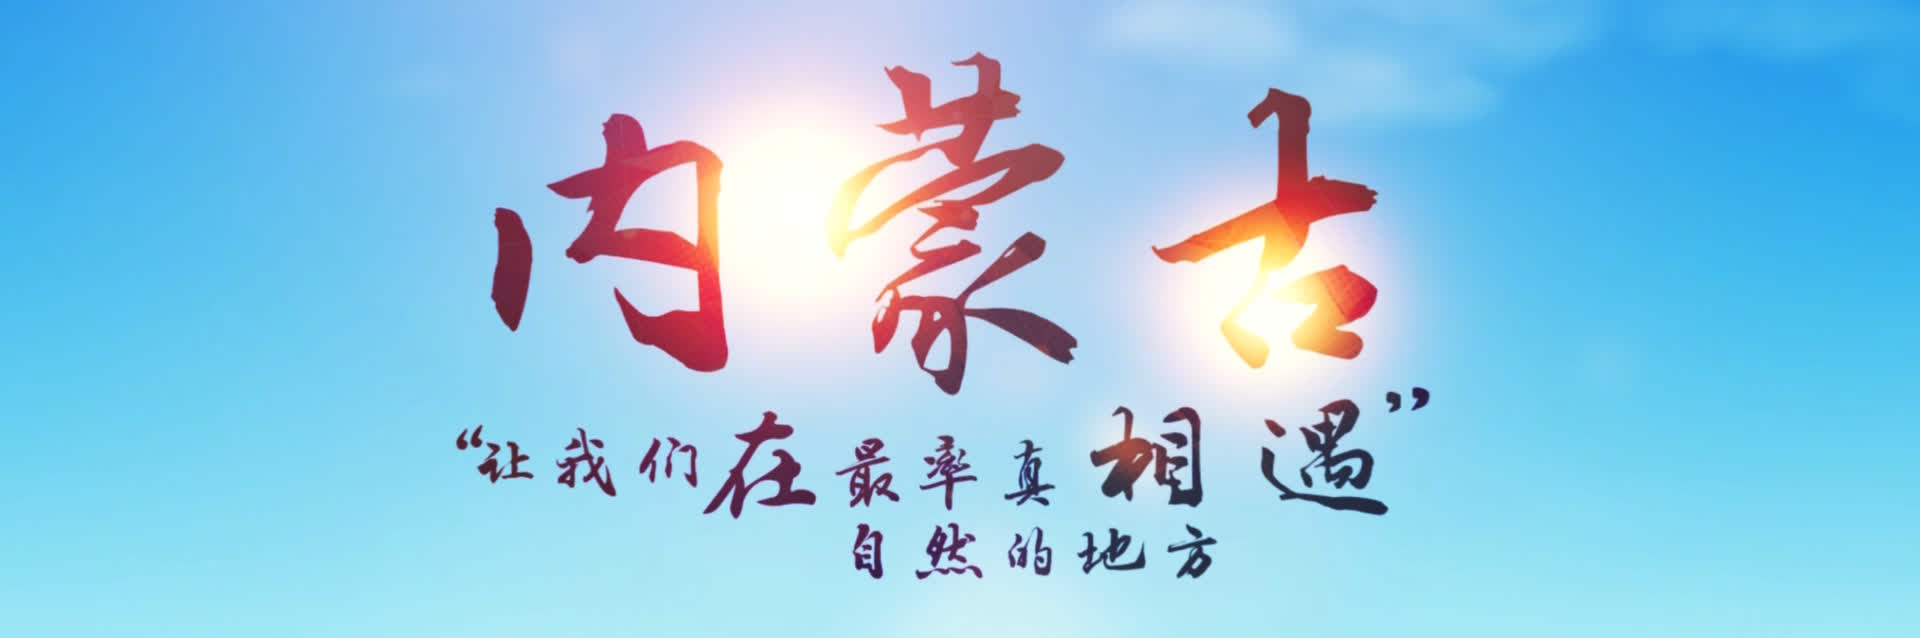 2018內蒙古·香港經貿合作宣傳banner